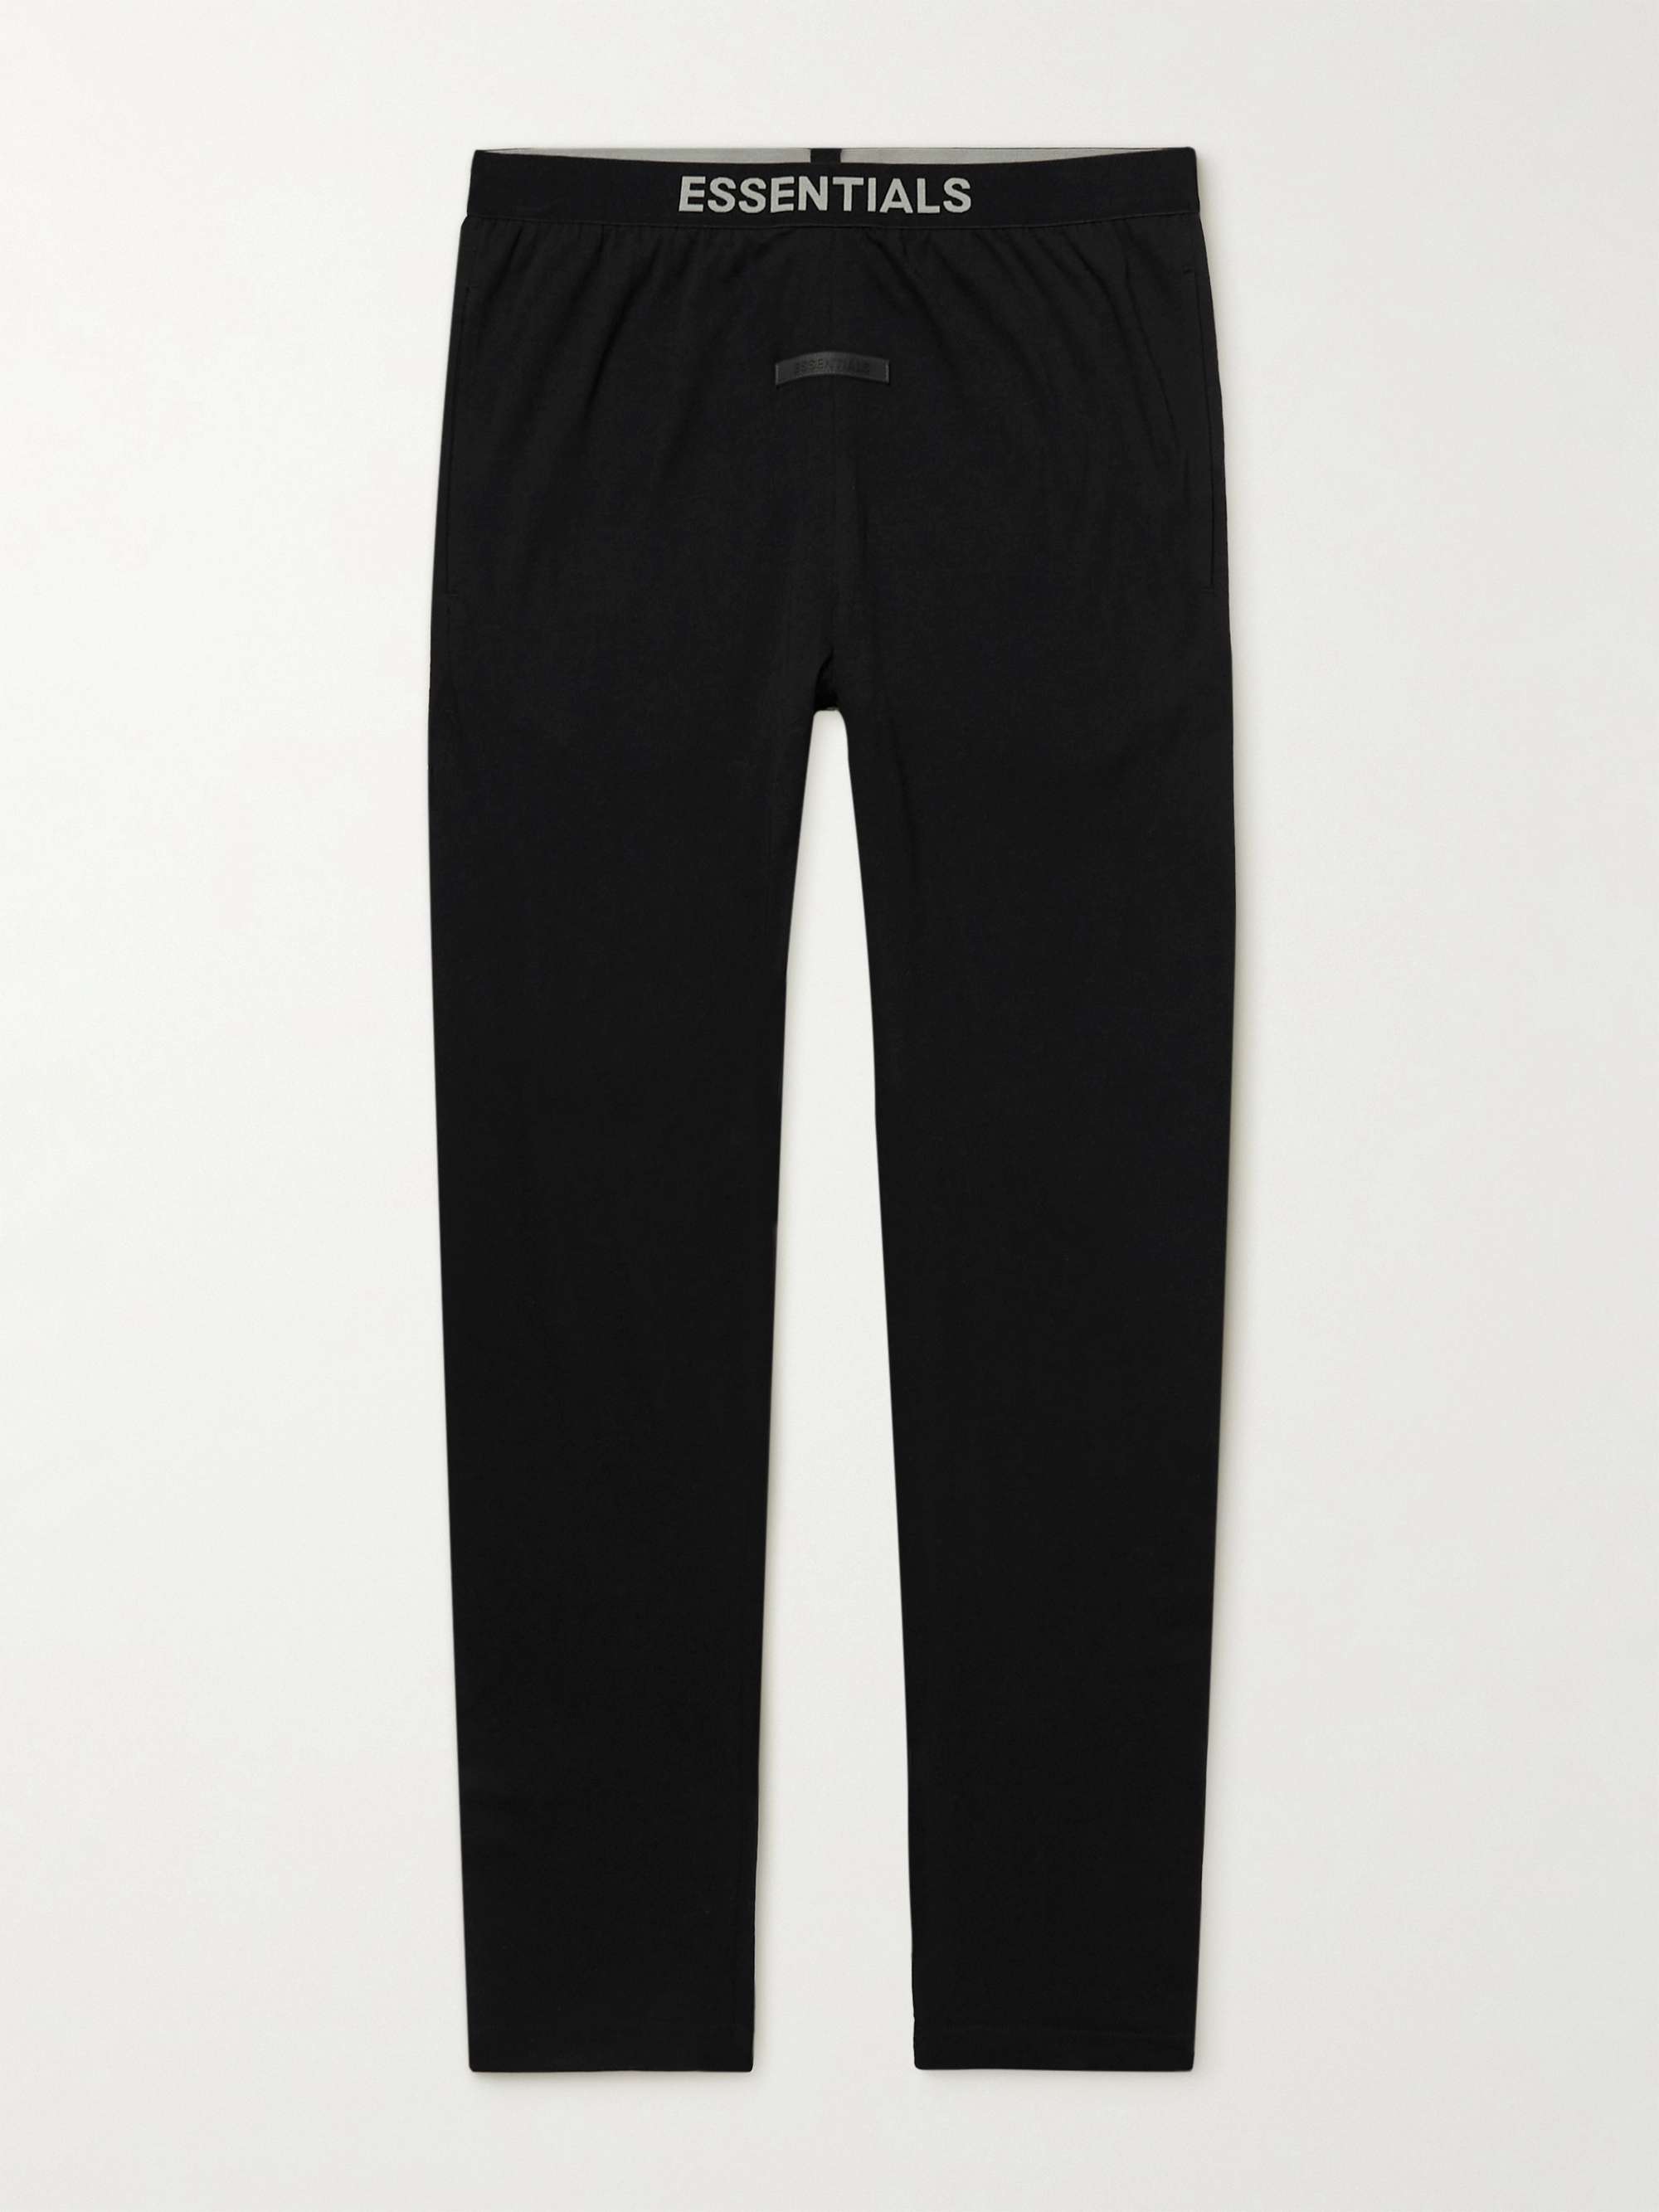 피어오브갓 에센셜 스웻팬츠 FEAR OF GOD ESSENTIALS Slim-Fit Tapered Cotton-Blend Jersey Sweatpants,Black